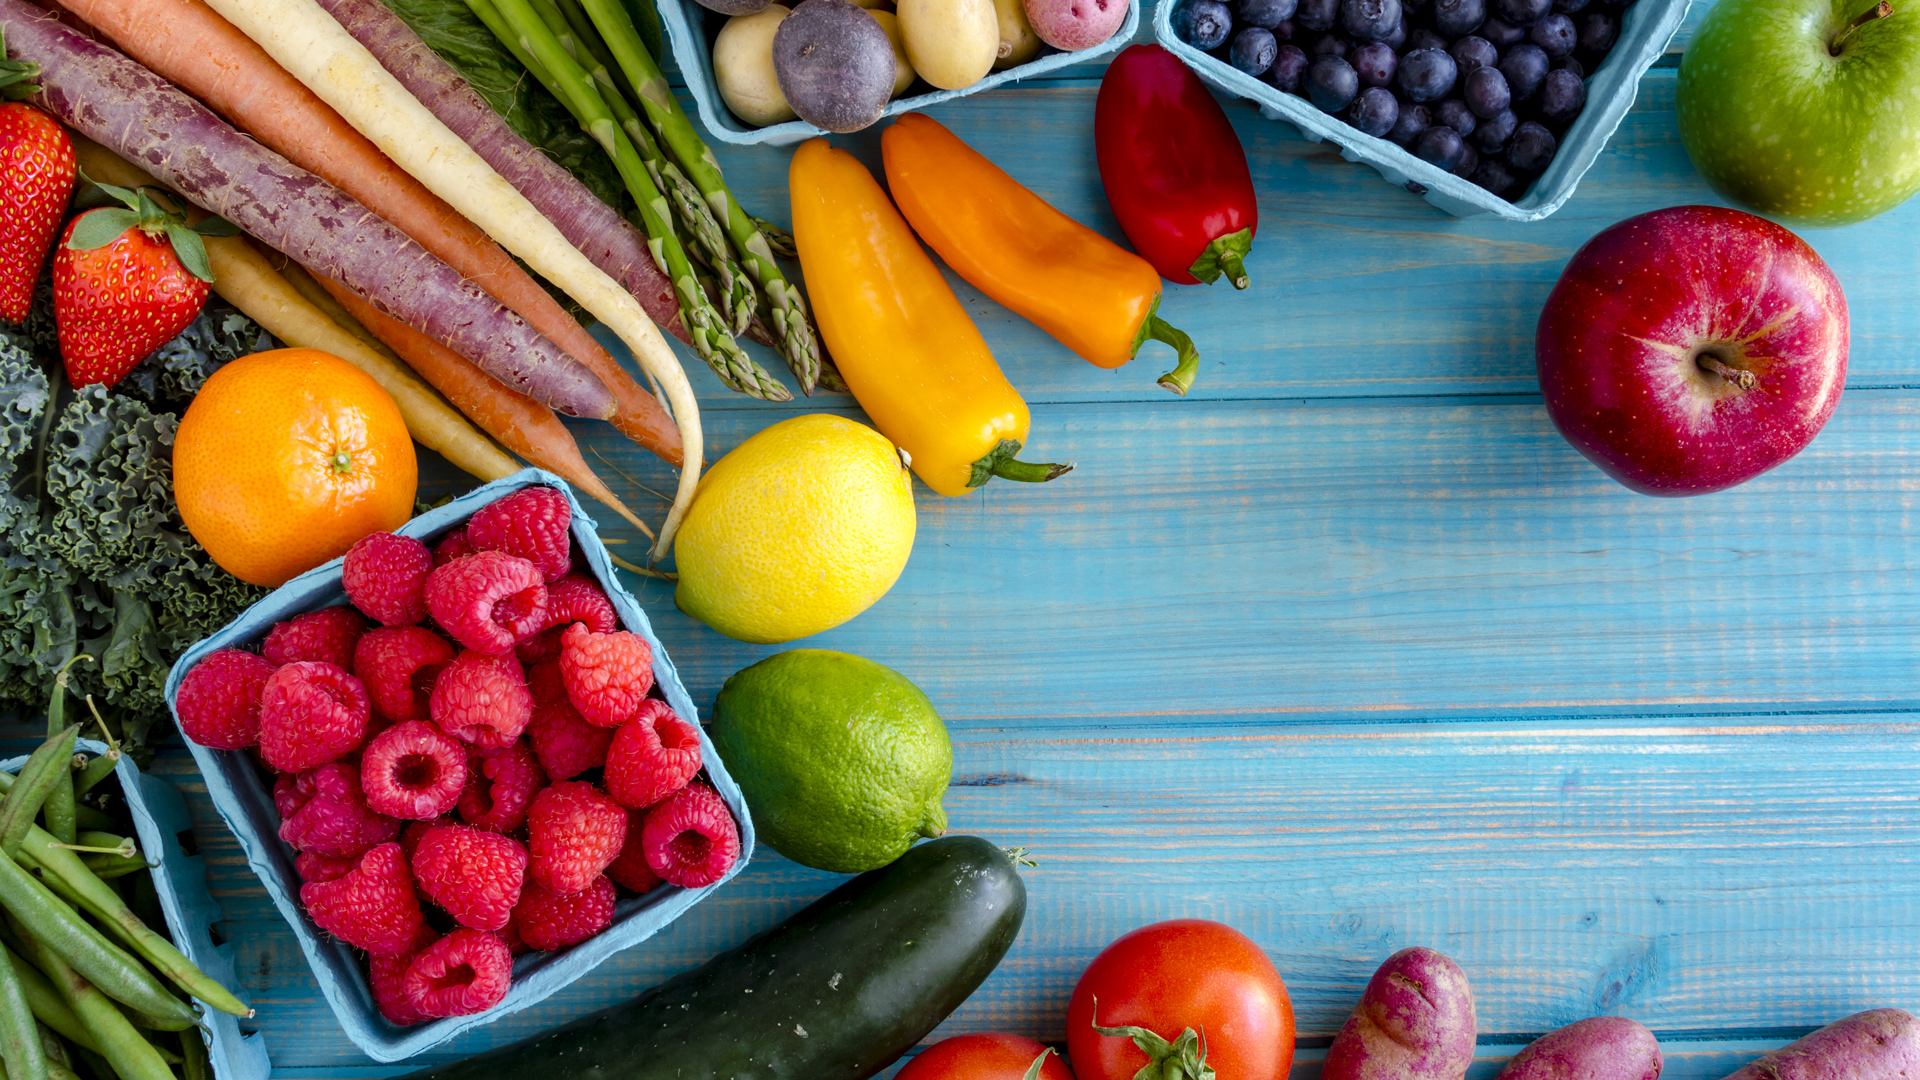 Las frutas y las verduras son los alimentos que más agua aportan. Se recomiendan al menos 5 porciones por día. Pero el precio alto es una dificultad para el acceso (iStock)